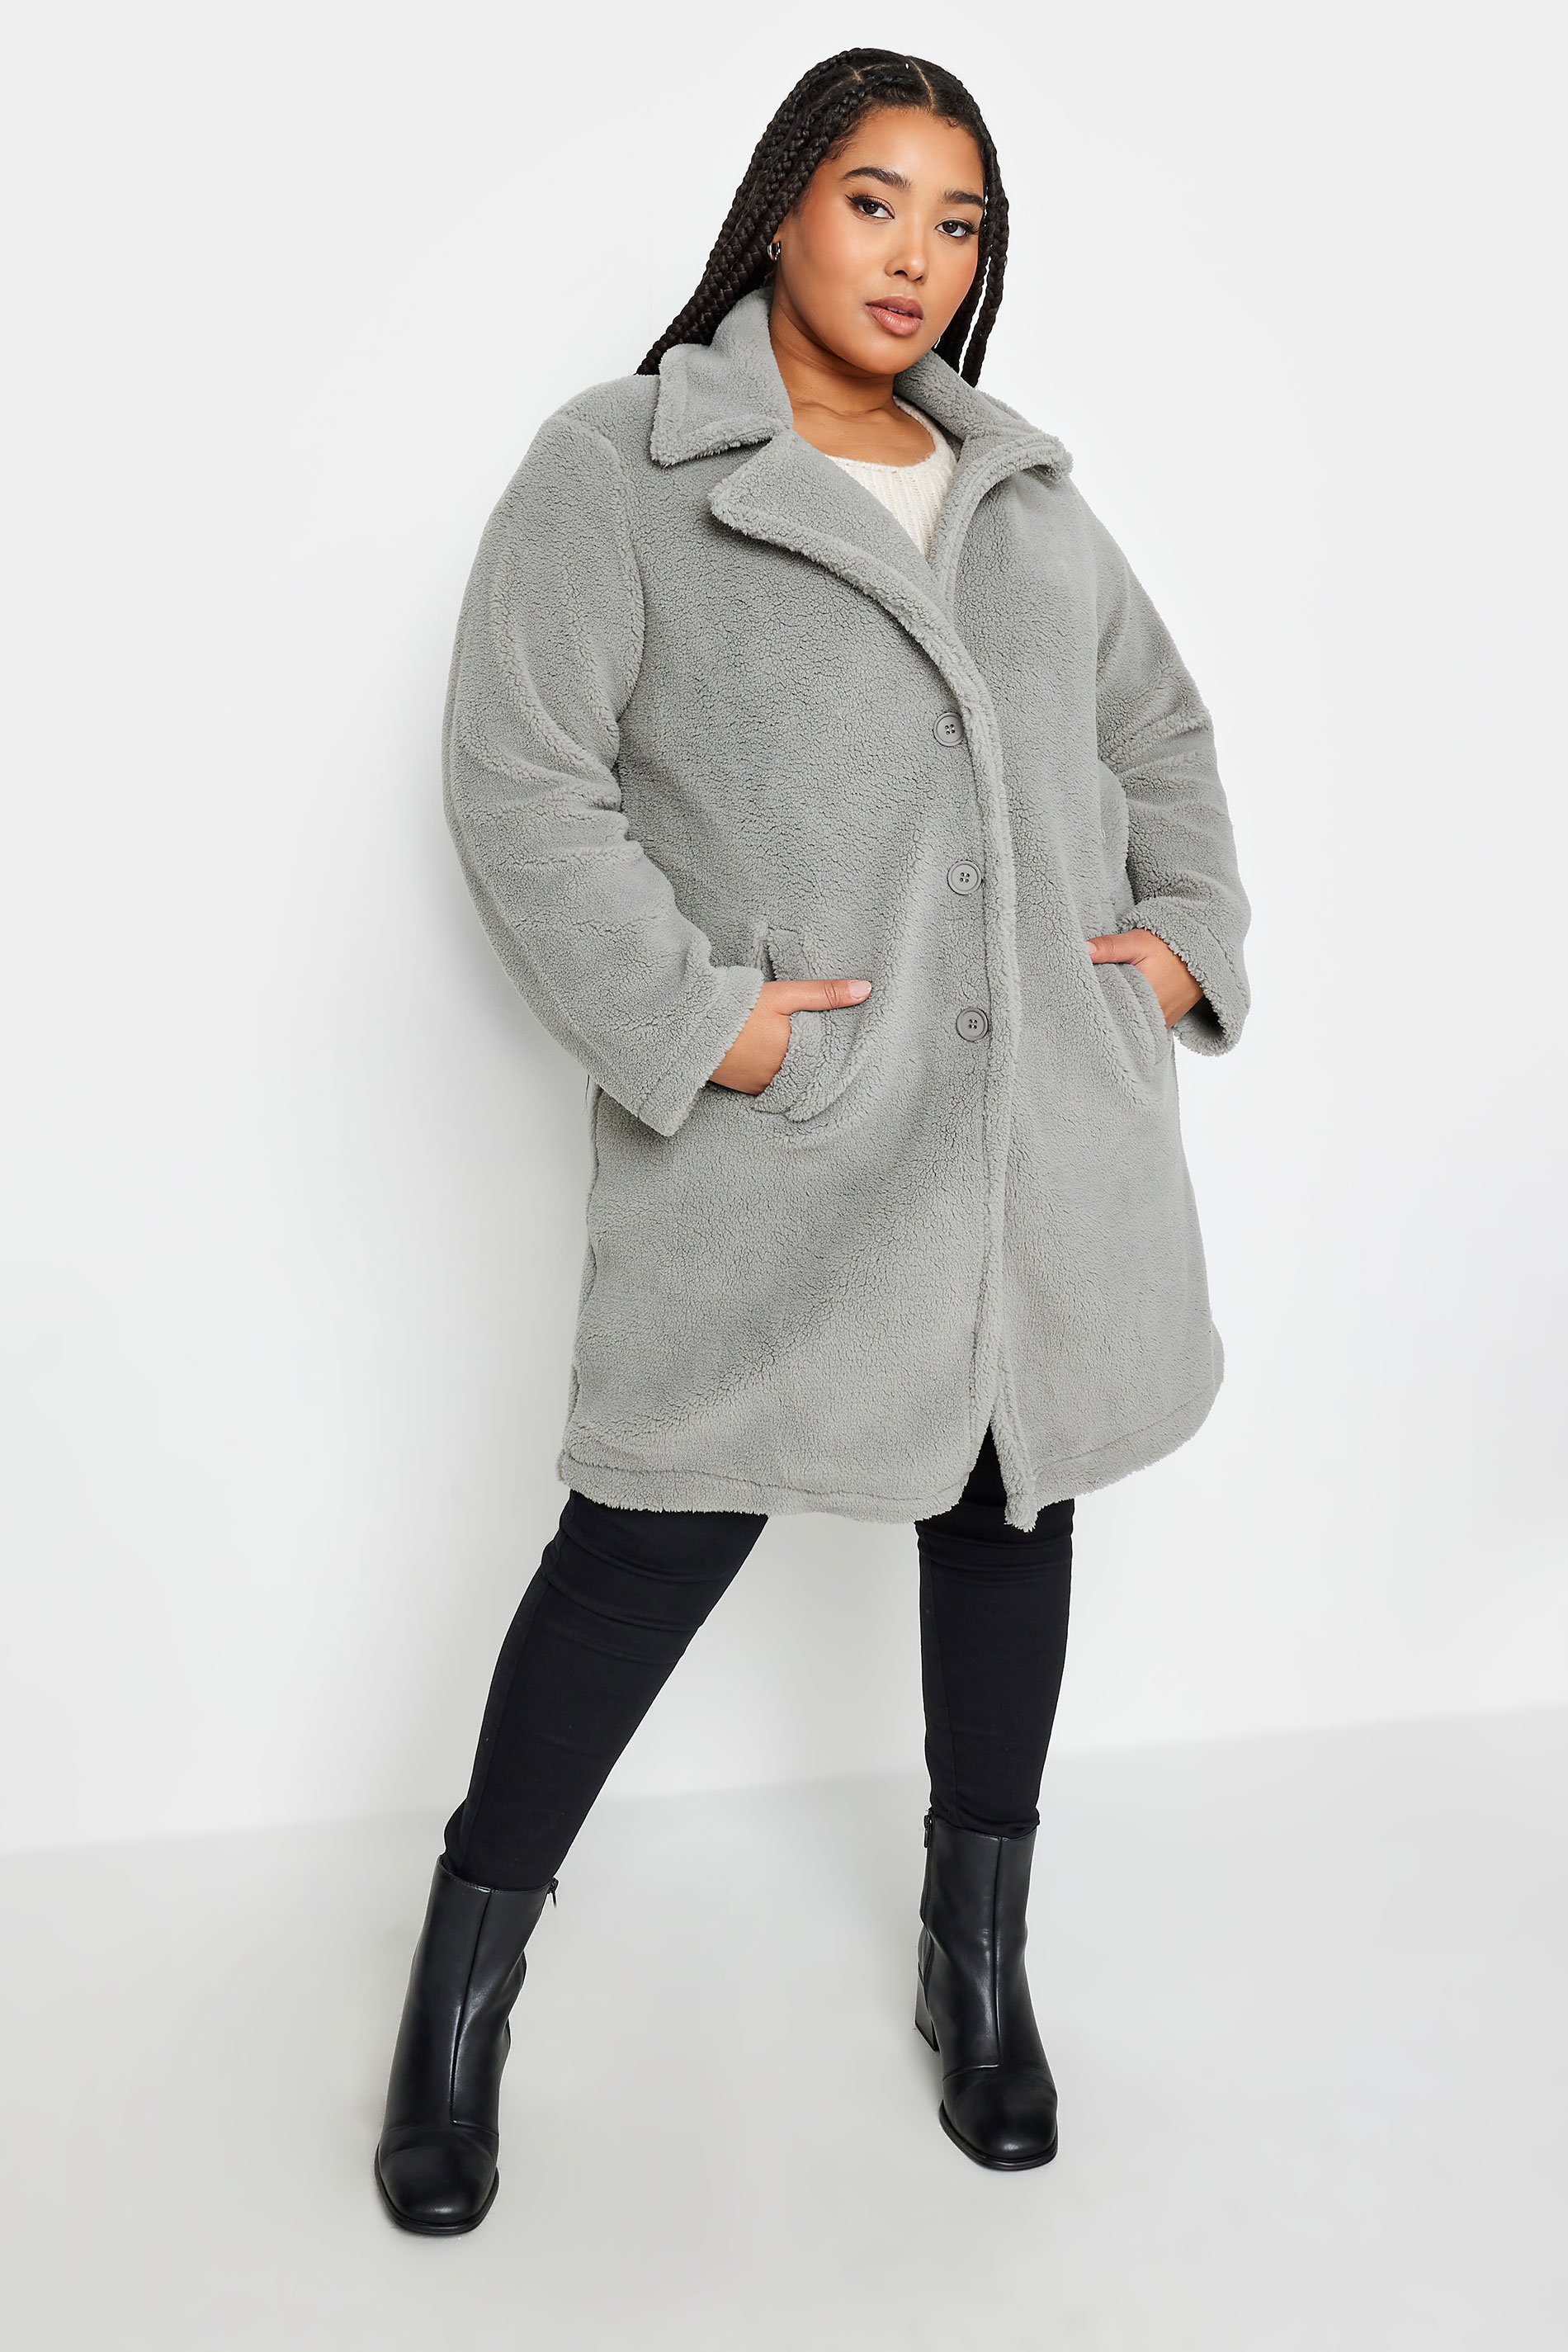 Yours Curve Grey Faux Fur Coat, Women's Curve & Plus Size, Yours product